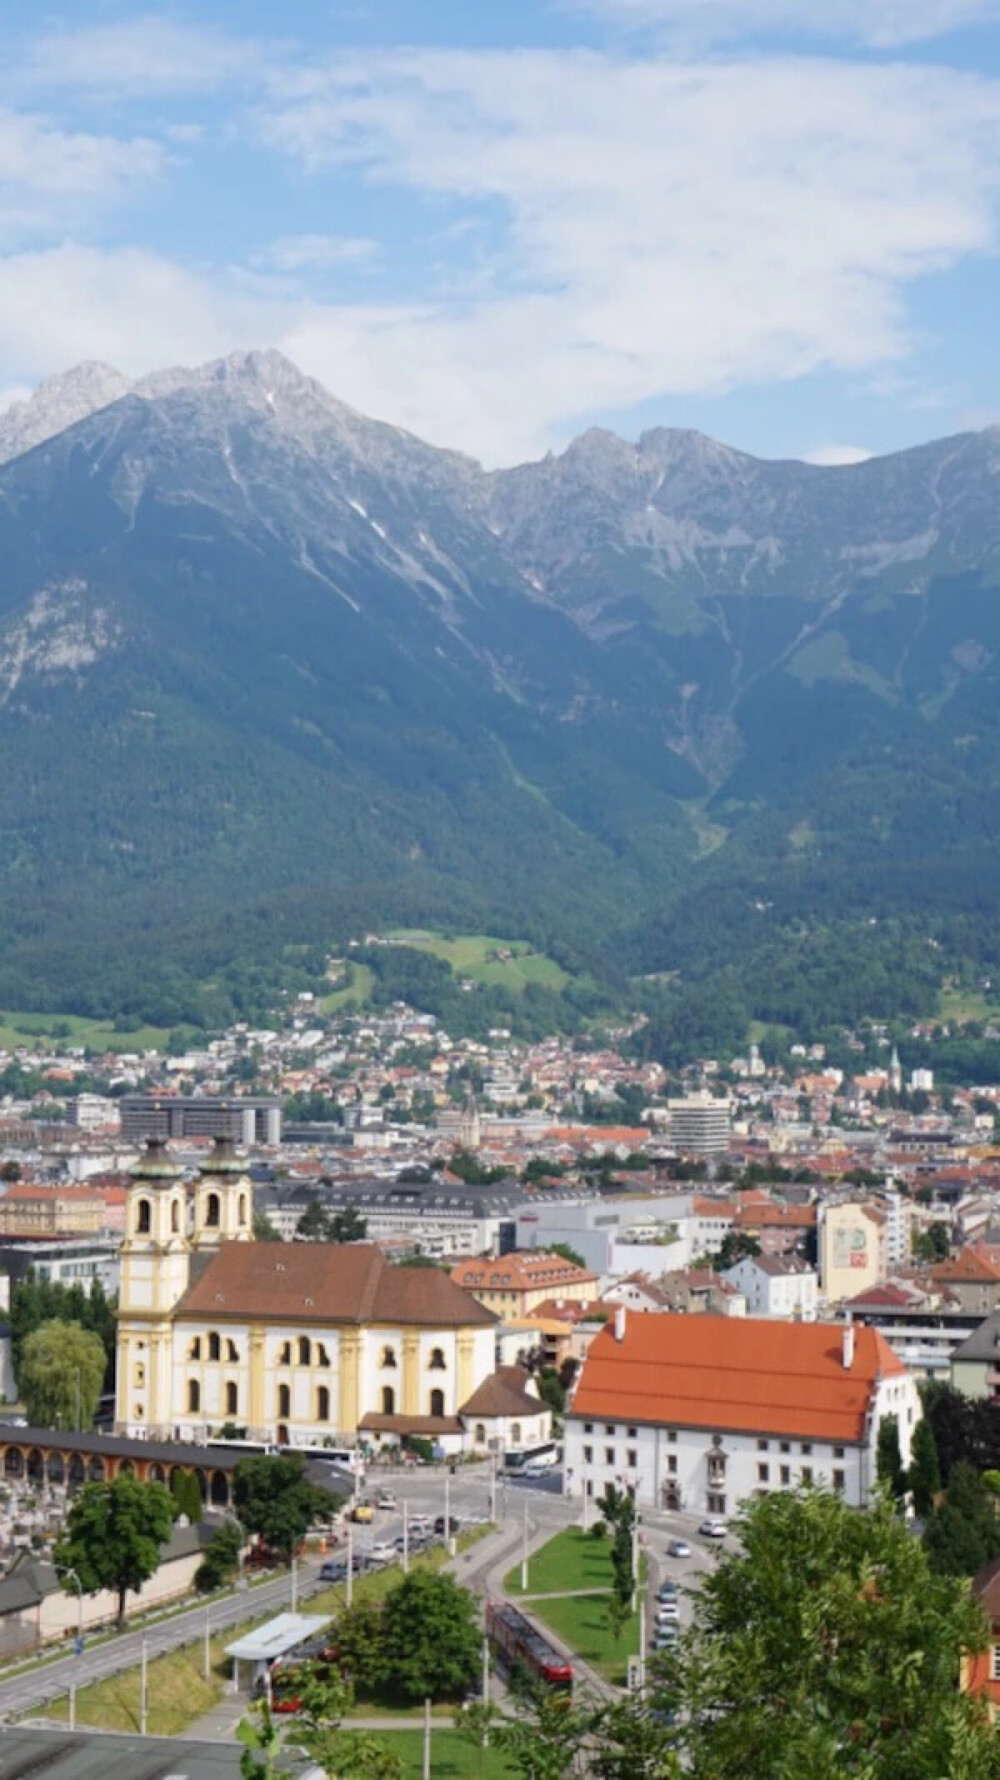 Innsbruck, Tyrol, Austria。奥地利茵斯布鲁克，位于位于奥地利西南腹地，因河之畔，是蒂罗尔州的首府。茵斯布鲁克的意思是“茵河上的桥”，经典的中世纪建筑艺术坐落在迷人的冰川山谷中是茵斯布鲁克独特的画面。这里每年都吸引了周边国家乃至全世界成千上万的冰雪爱好者，阿尔卑斯山的雪峰连绵起伏，仿佛伸手可及；静静的茵河穿城而过，处处透着一股灵气。茵斯布鲁克至今仍然保持着中世纪城市的容貌，在狭窄的小街上，哥特风格的楼房鳞次栉比。